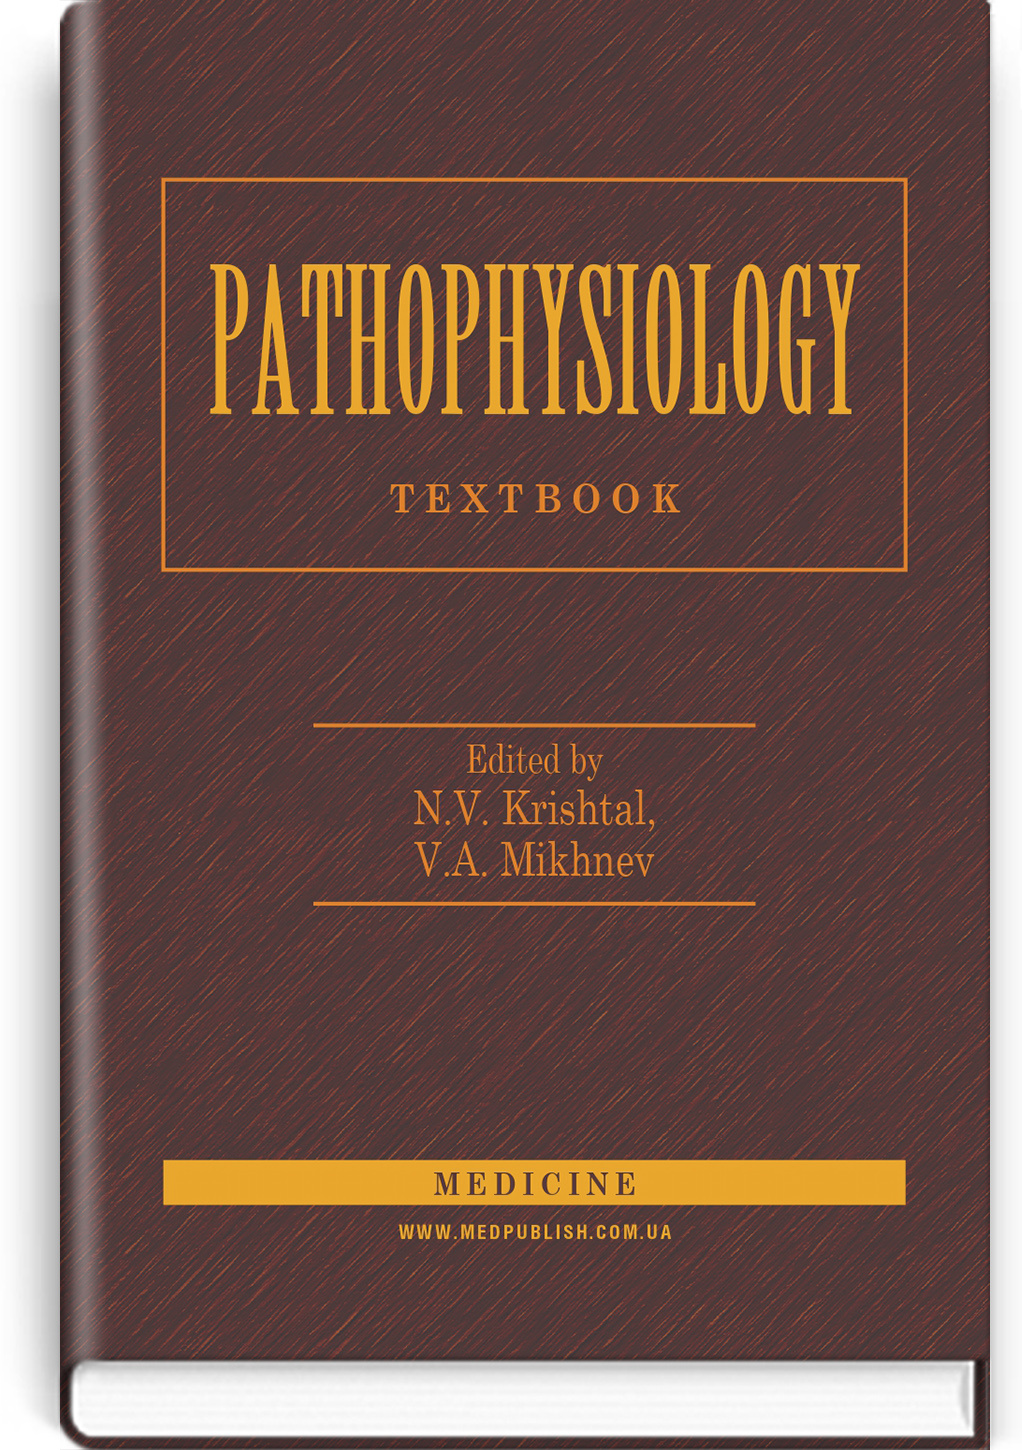 Pathophysiology: textbook